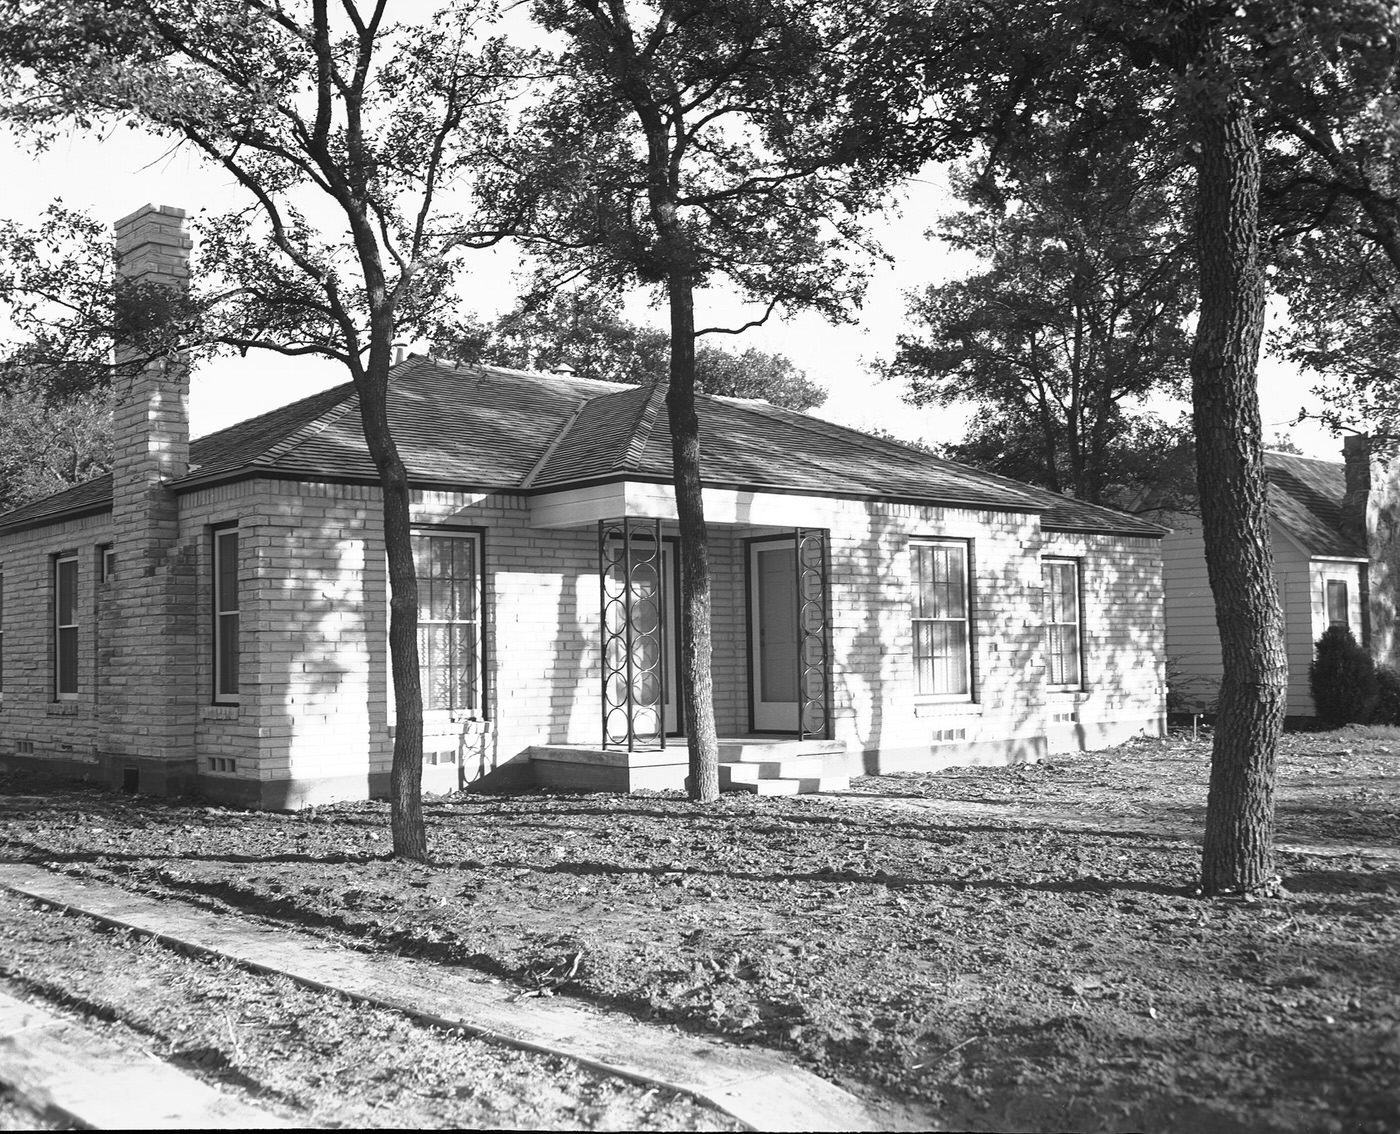 1604 Blue Bonnet Dr. in Oakhurst neighborhood, Fort Worth, Texas, 1941